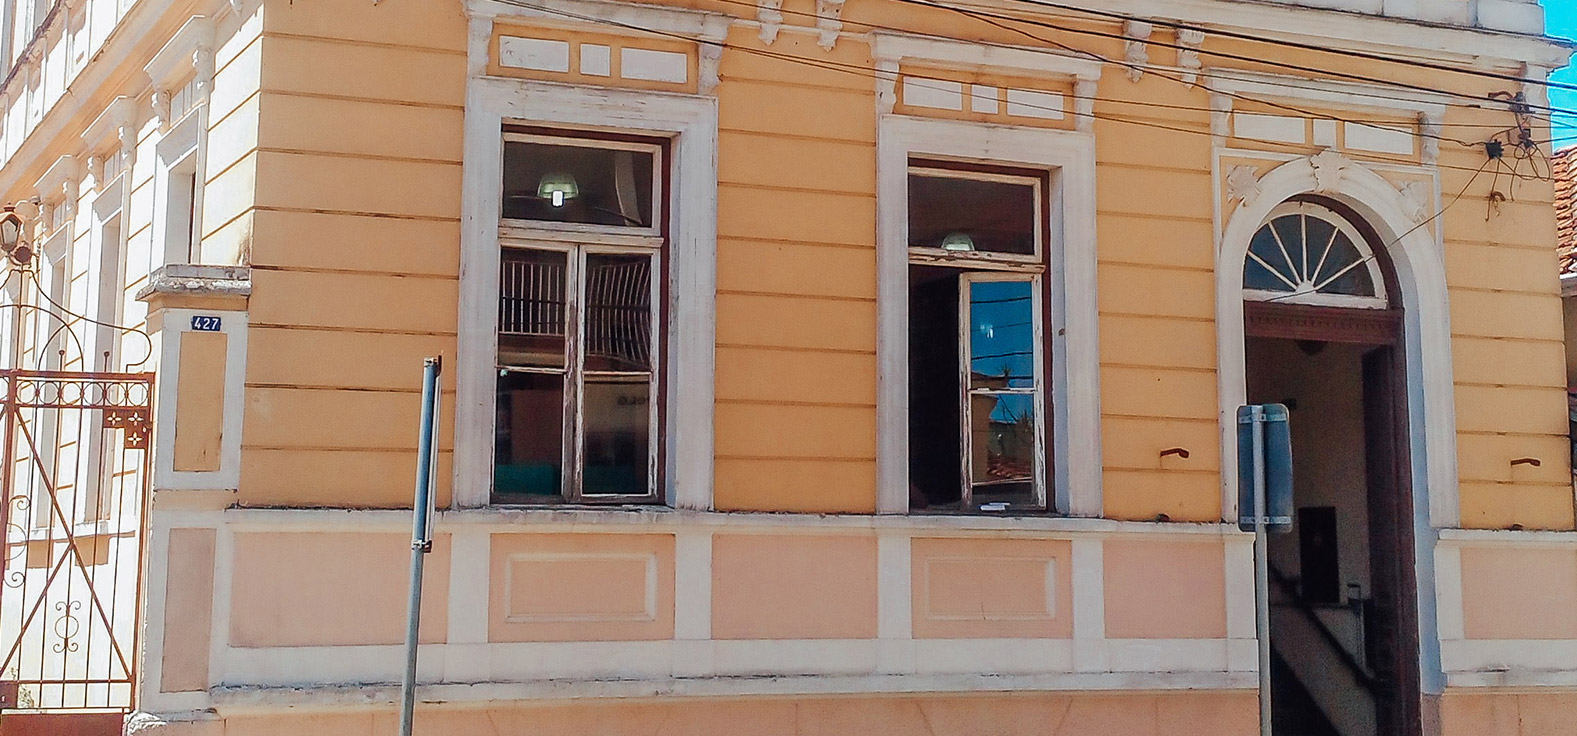 Gabinete de Leitura em Rio Claro | Portal Serra do Itaquerí